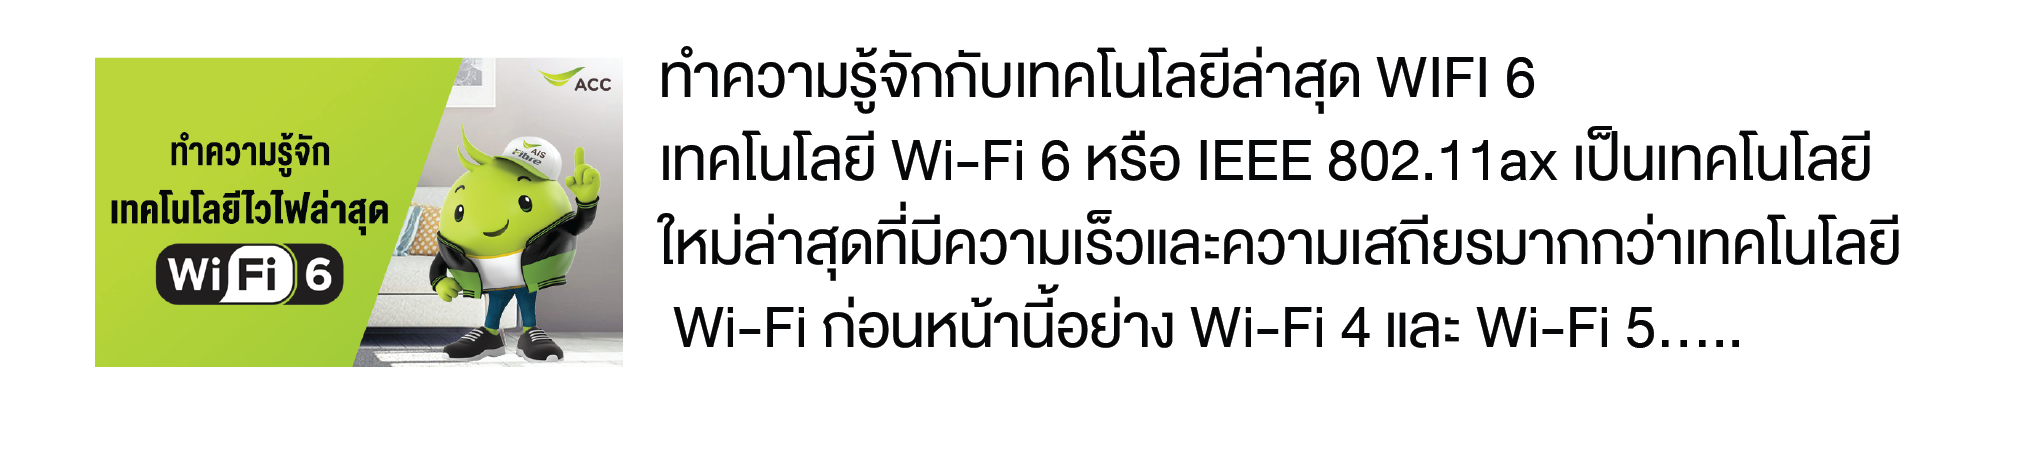 info9-wifi6